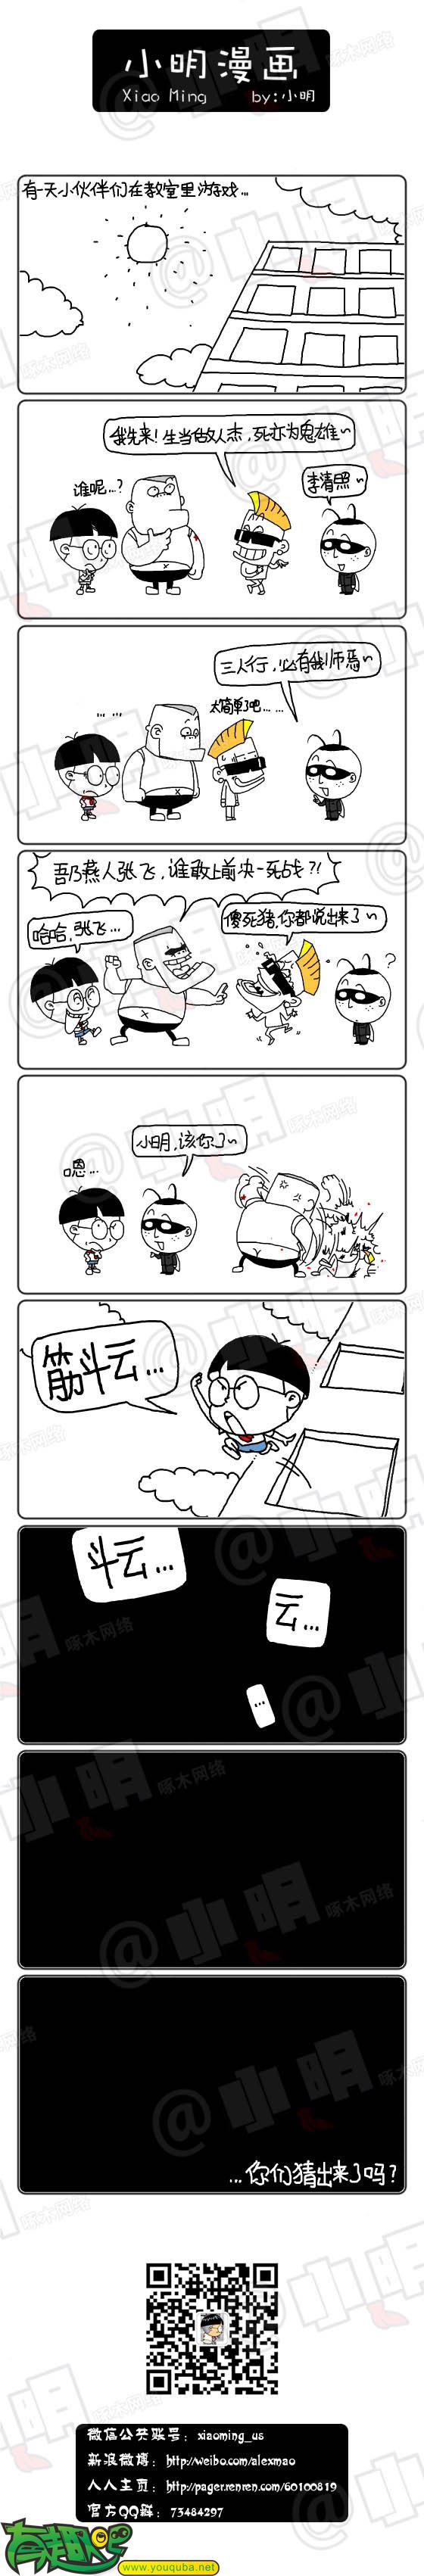 小明系列漫画：猜人名